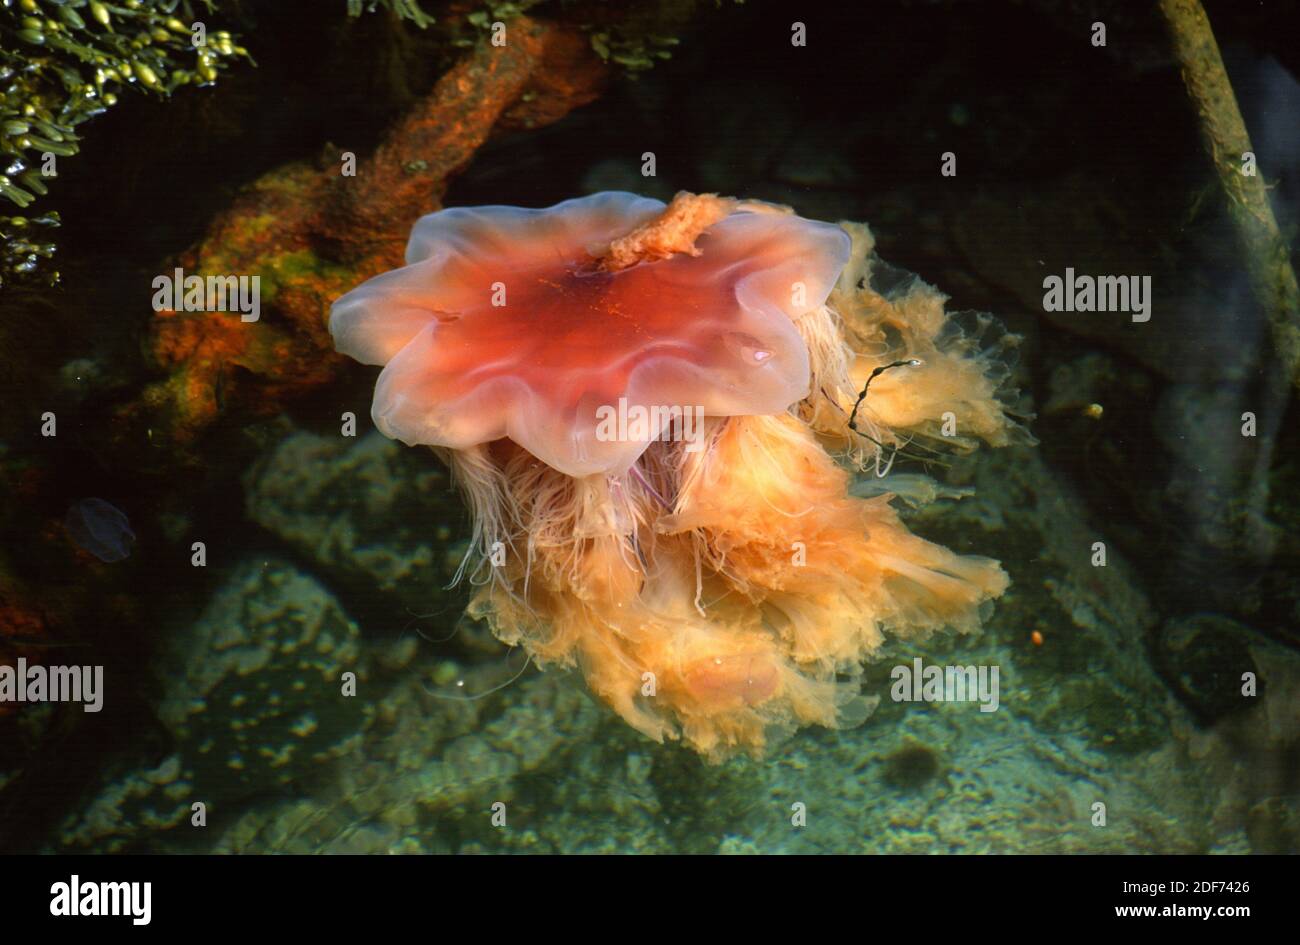 La medusa de los Leones (Cyanea capillata) es una medusa de mar. Esta foto fue tomada en la costa de Bohuslan, Suecia. Foto de stock